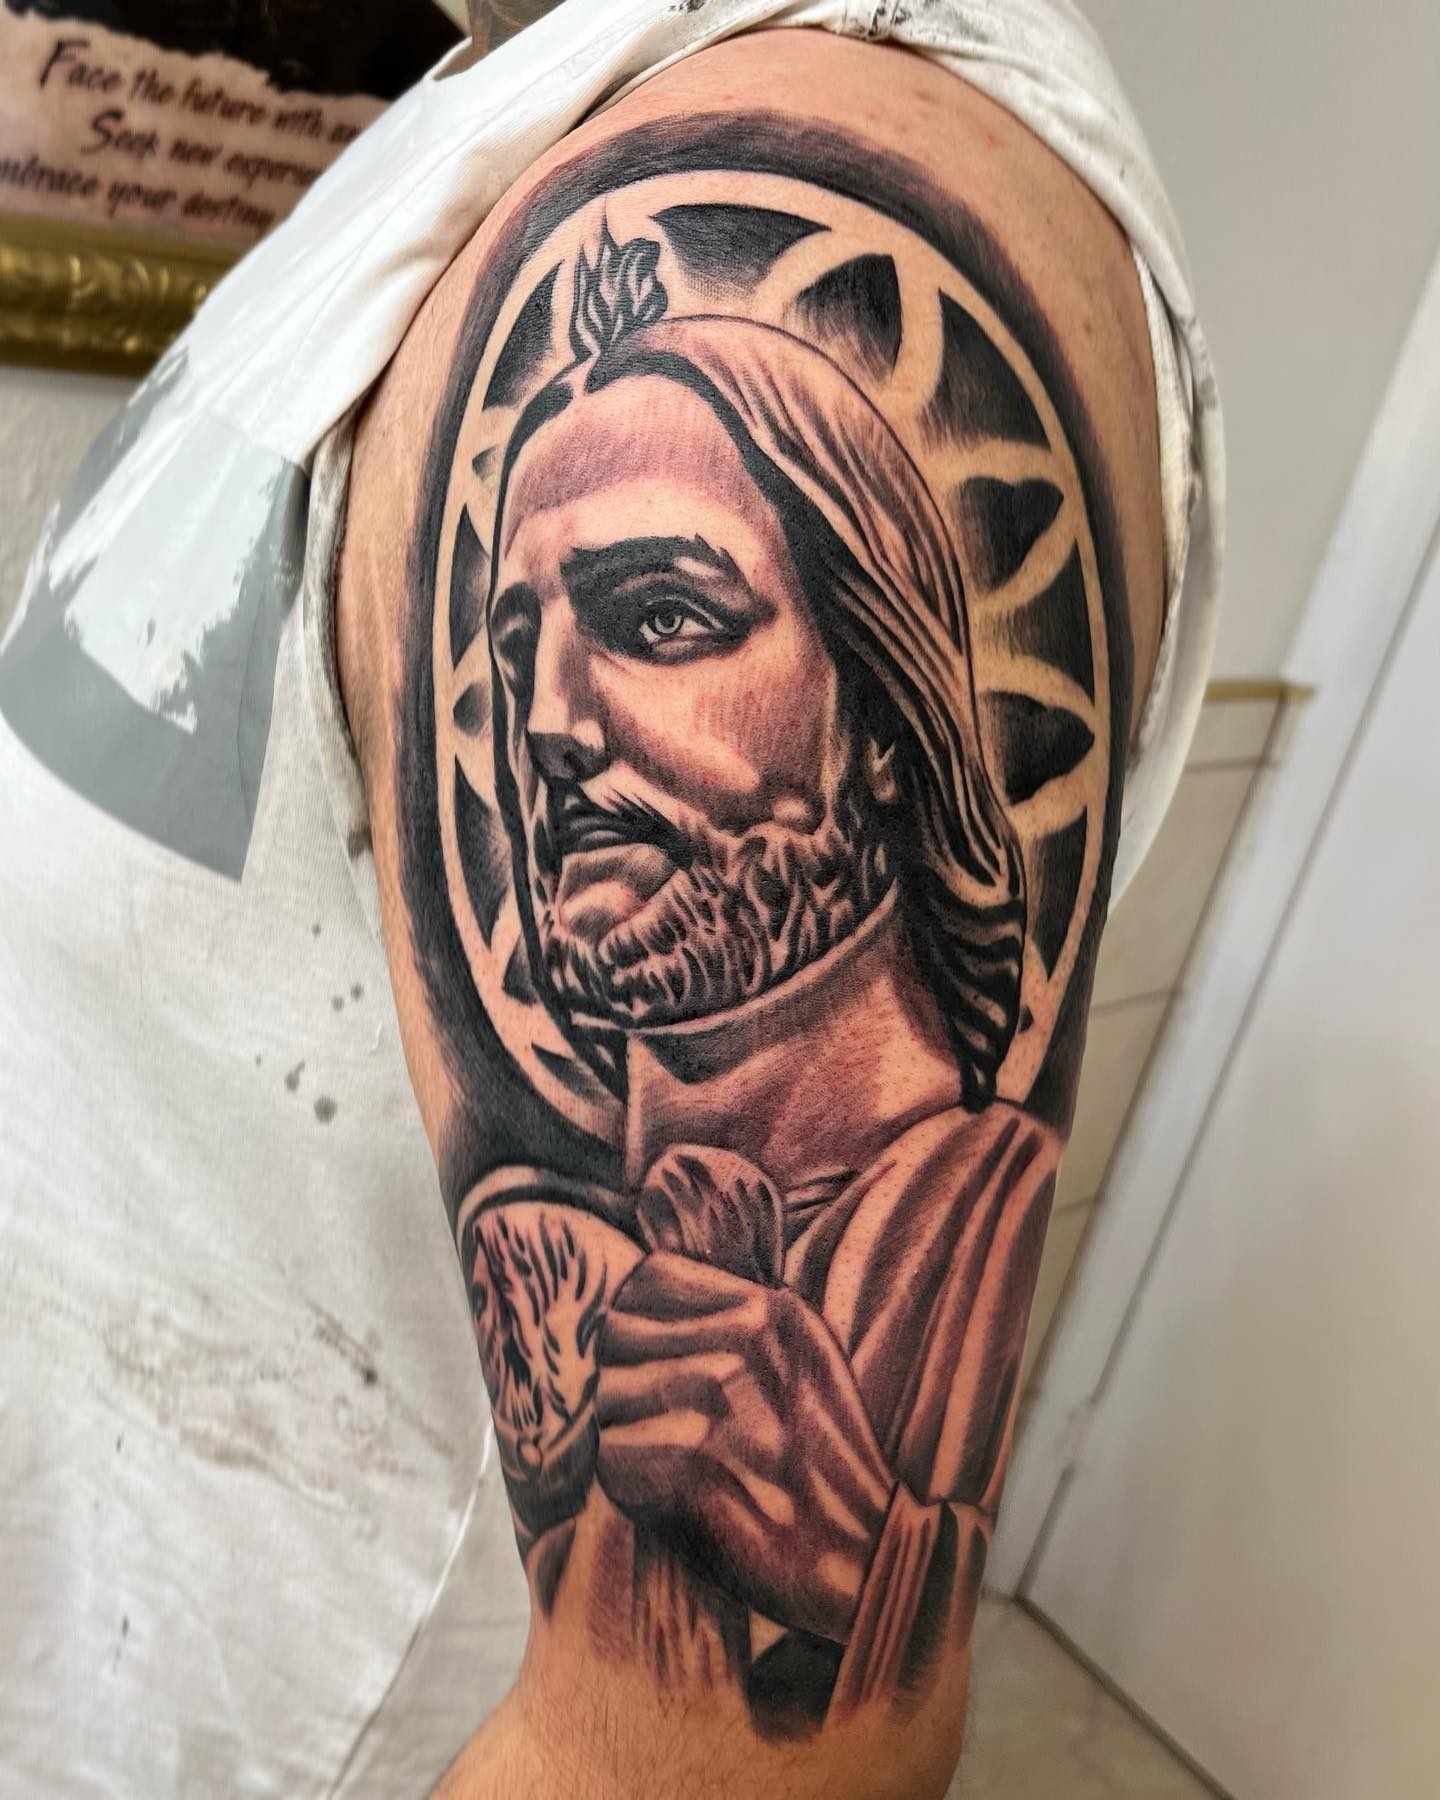 Tatuaje de San Judas en el brazo.